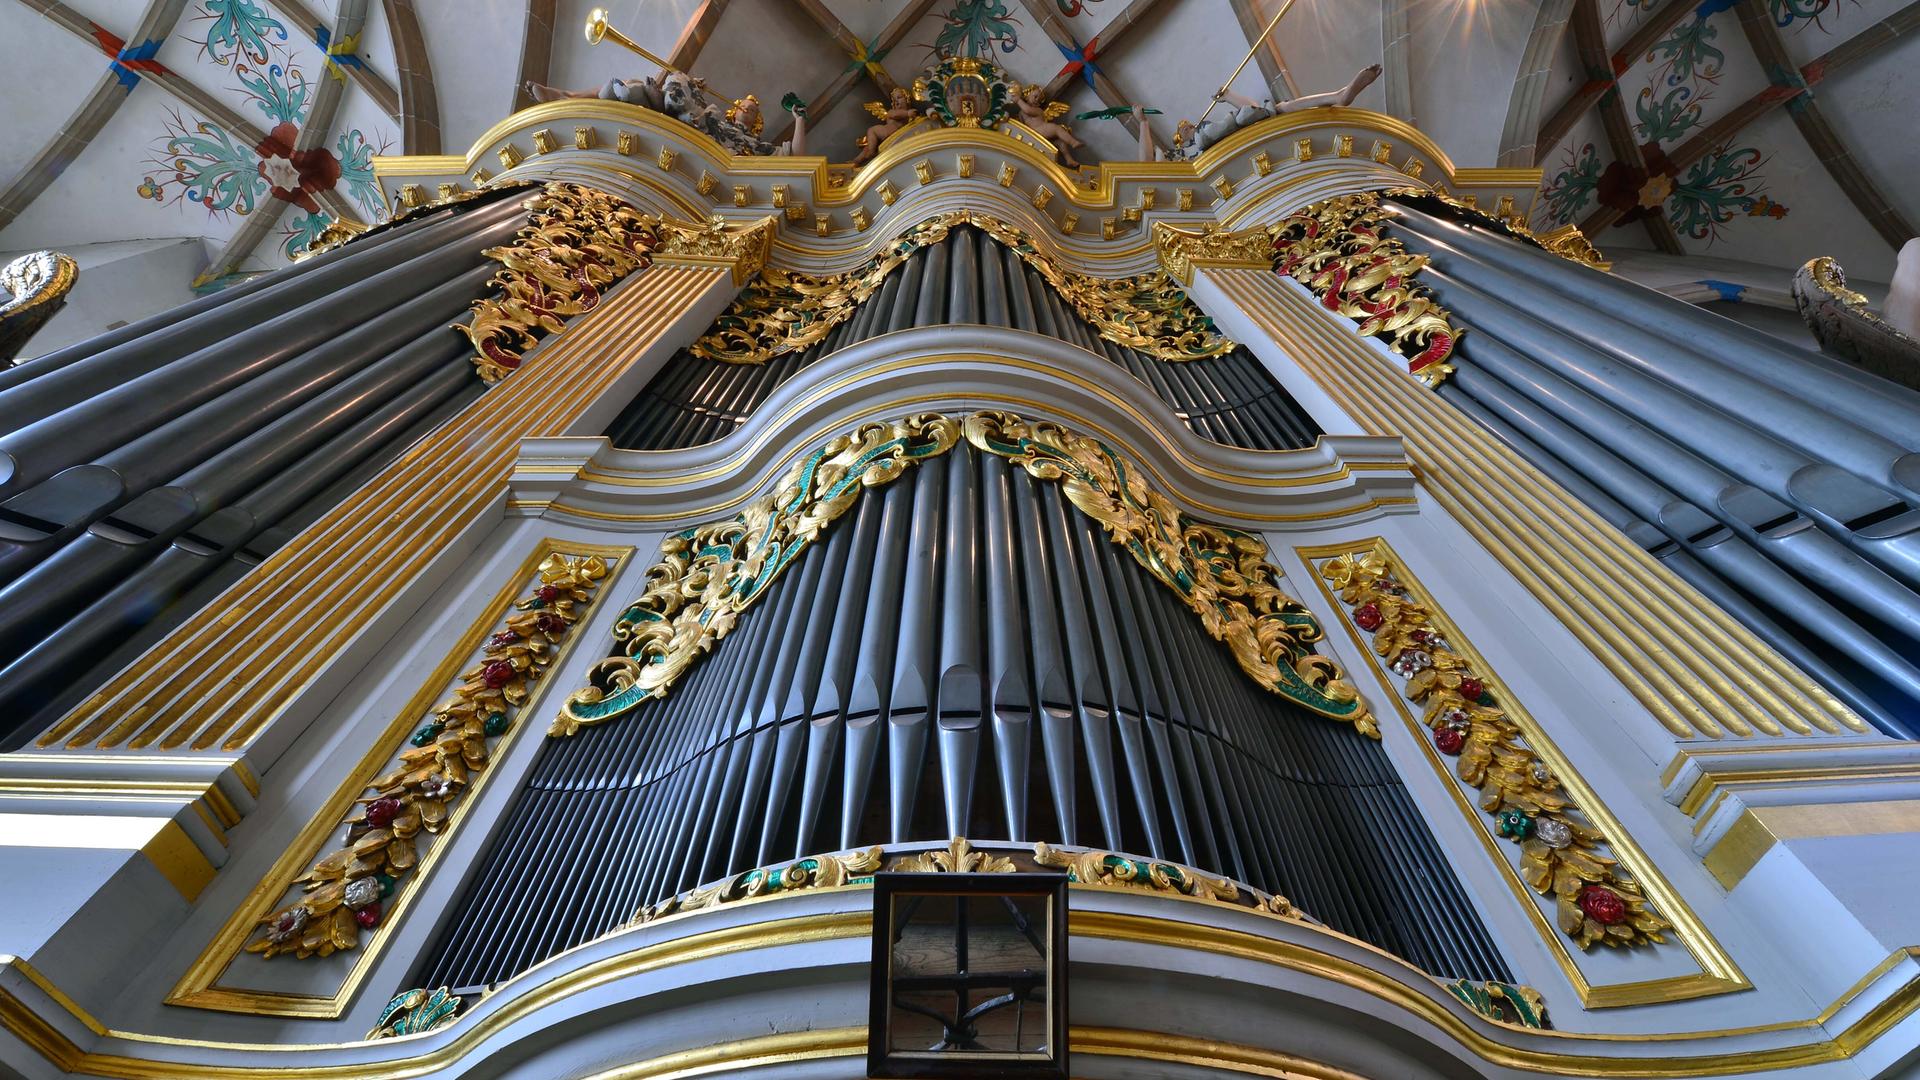 Blick auf die Silbermann-Orgel im Dom Freiberg (Sachsen). Bis zum kleinsten Nagel ist fast noch alles Original. Seit 1714 klingt das barocke Meisterwerk Gottfried Silbermanns nahezu unverändert und zählt heute zu den wertvollsten und bedeutendsten Instrumenten der Welt.